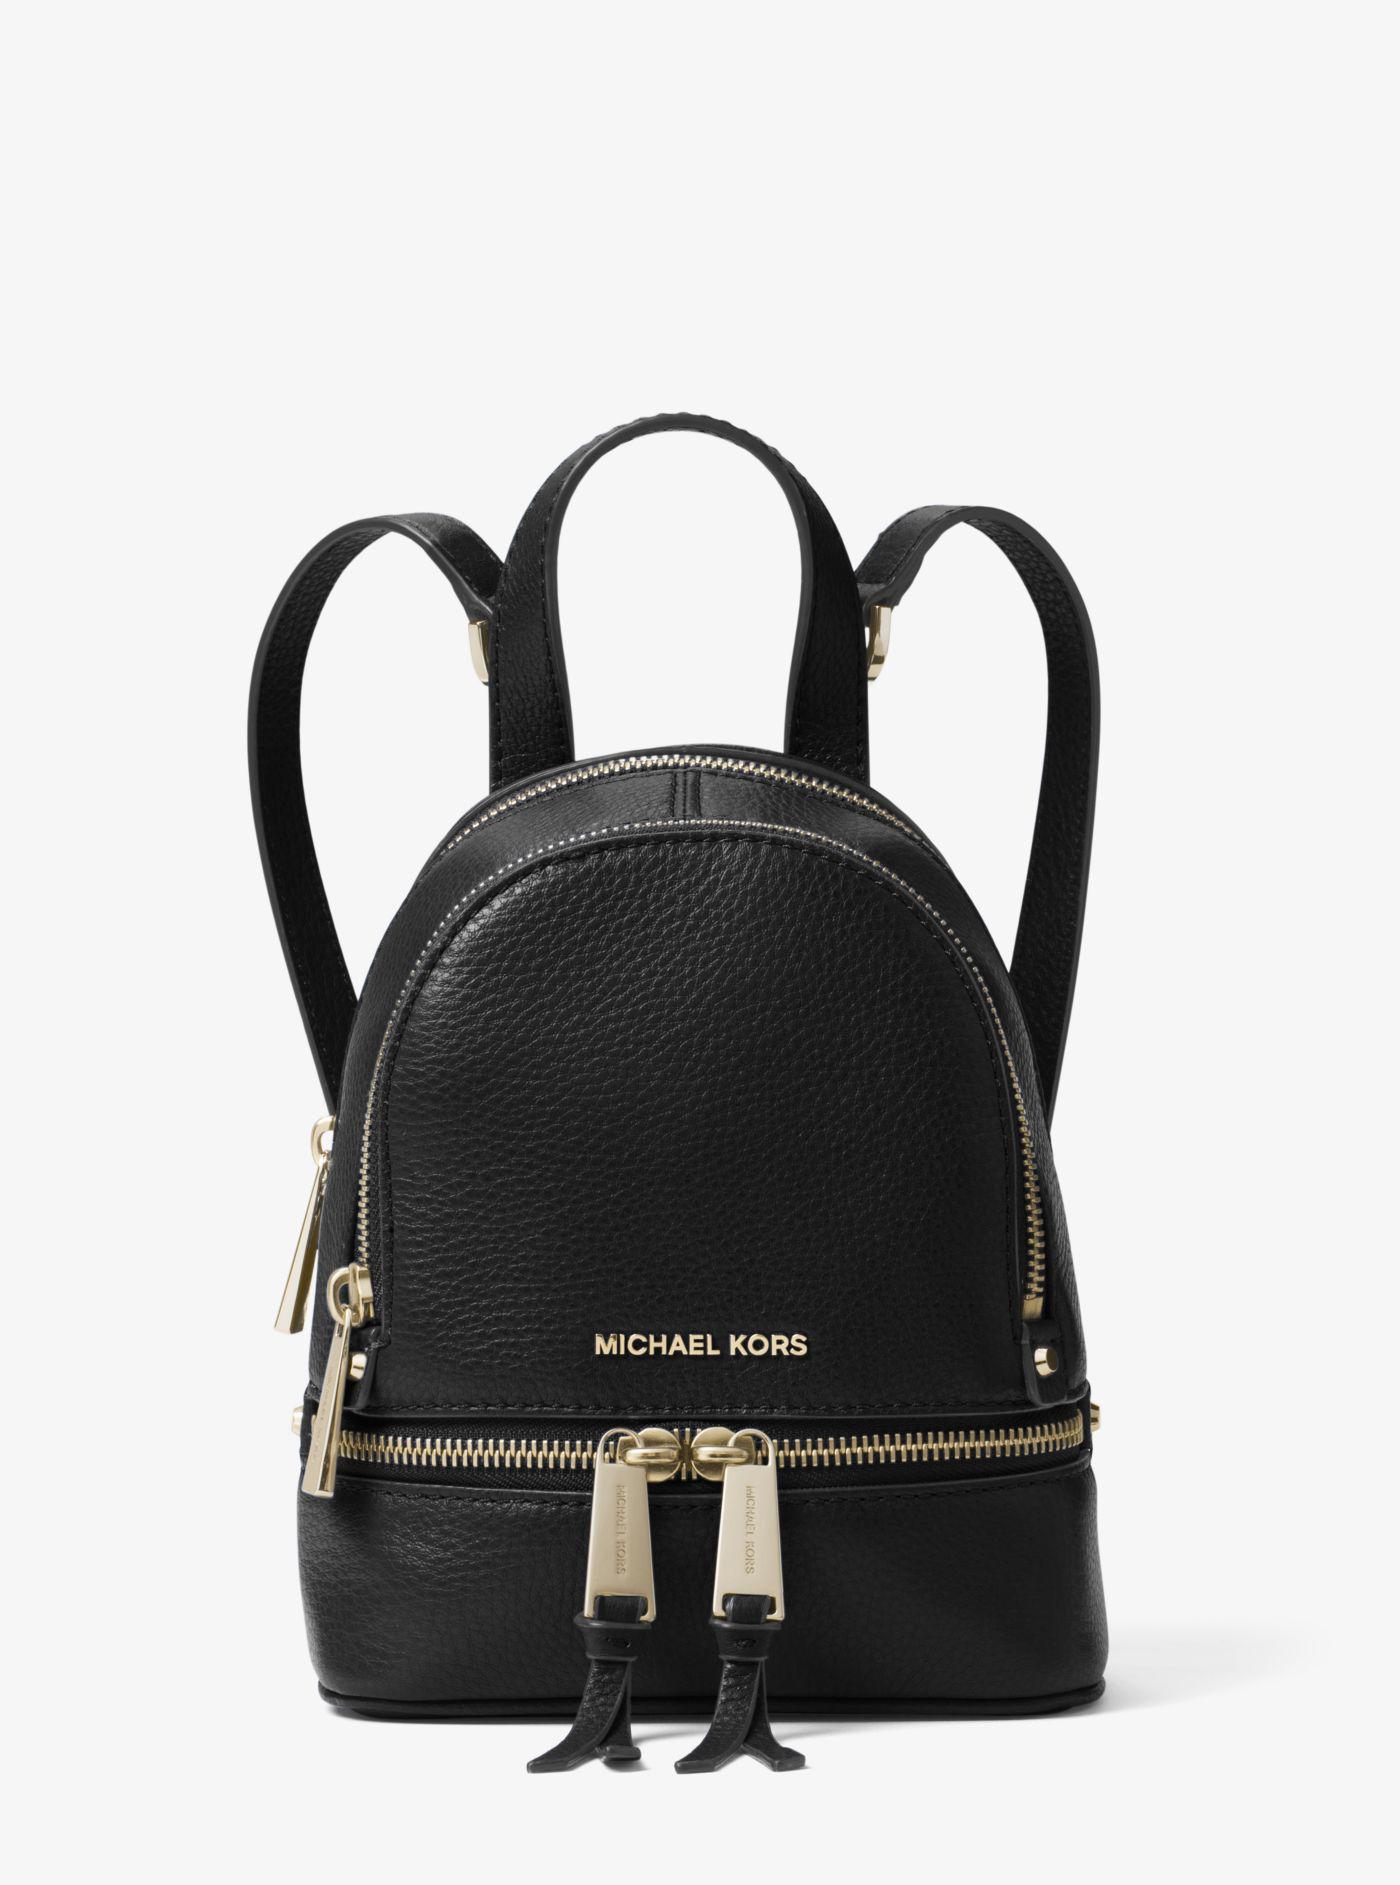 Michael Kors Rhea Mini Leather Backpack in Black - Lyst